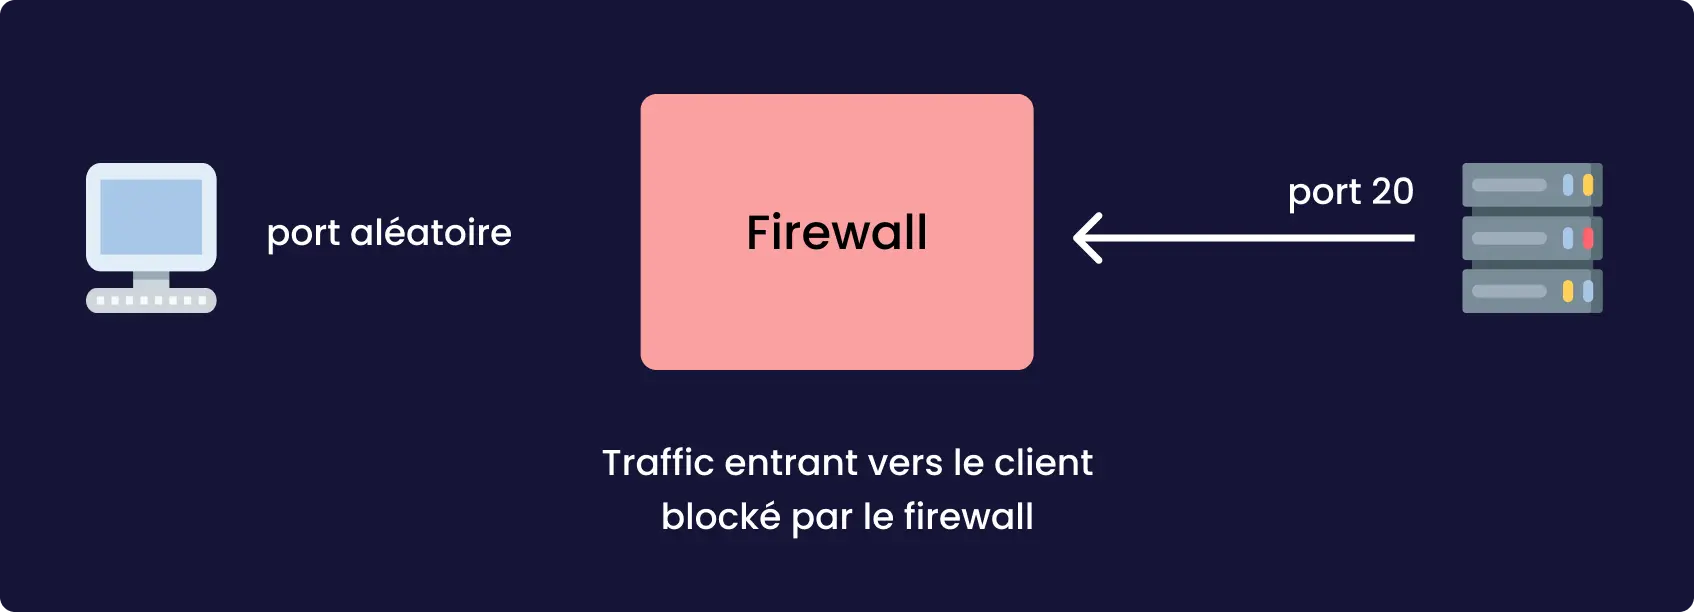 Les données envoyées par le serveur sont bloquées par le Firewall en mode passif